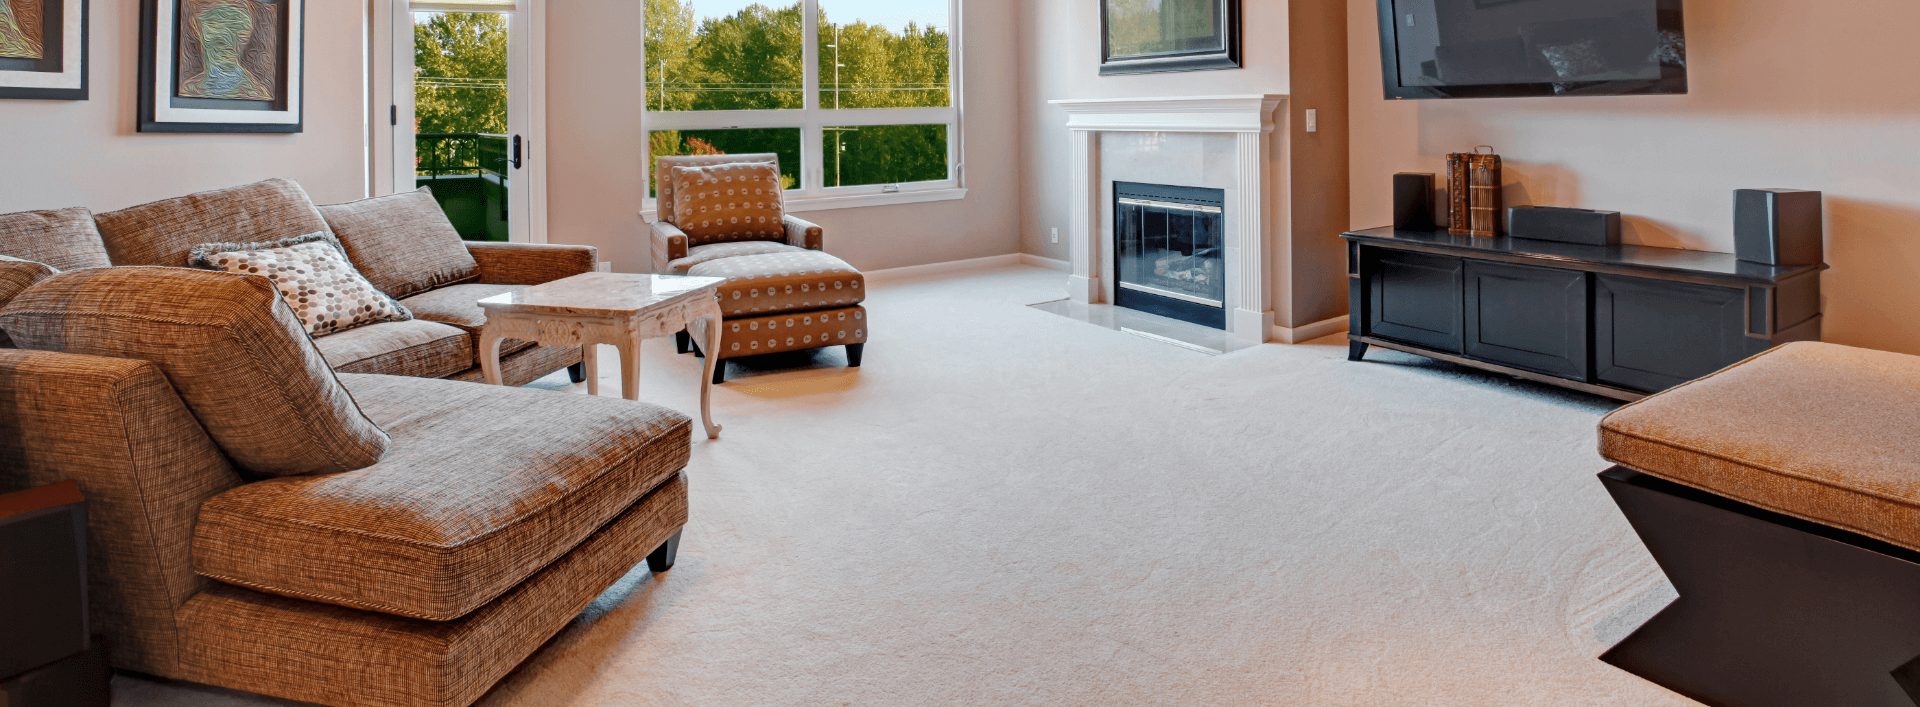 正式客厅中的轻地毯